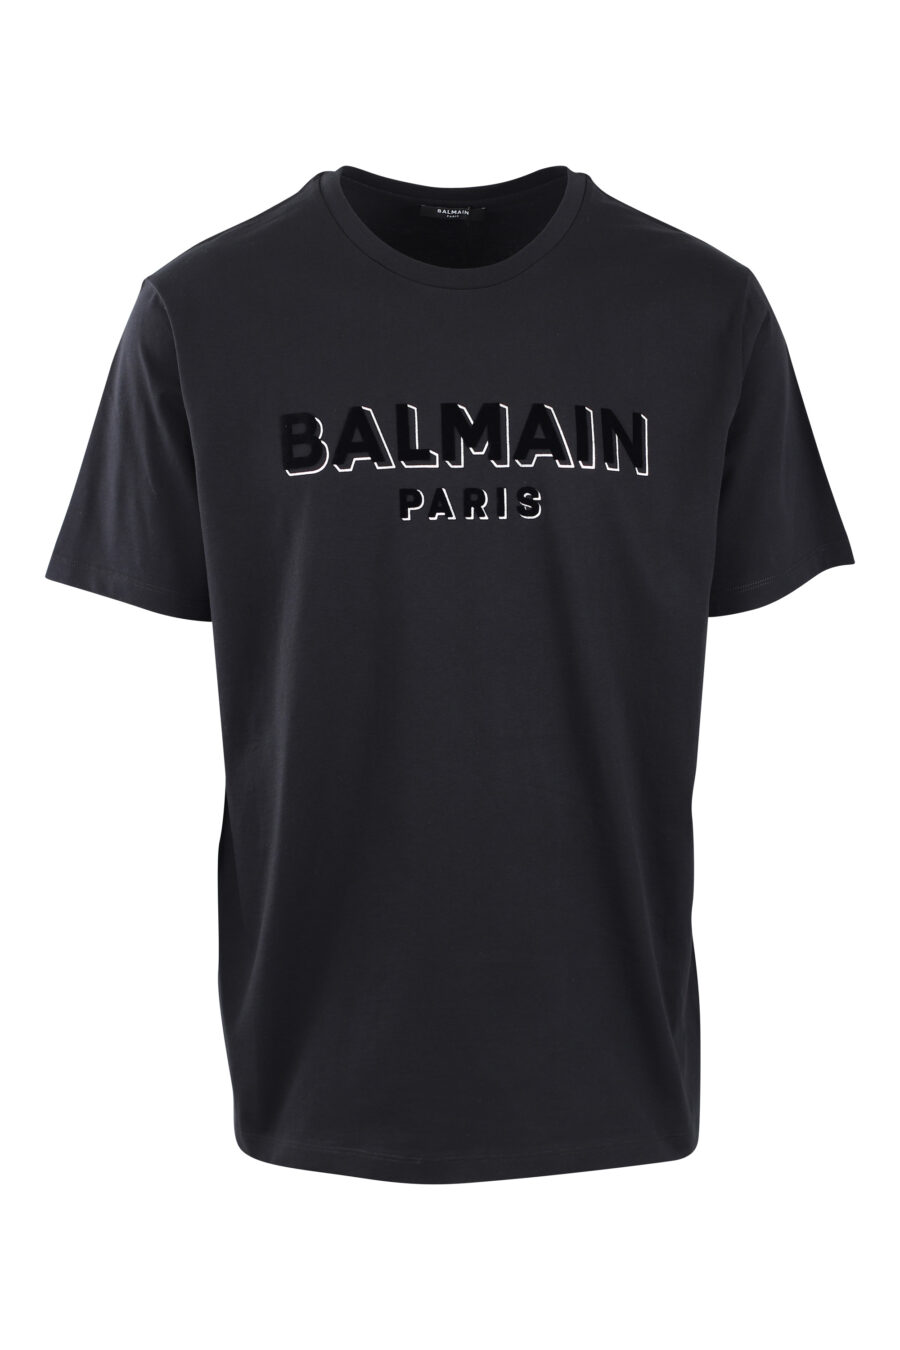 Camiseta negra con maxilogo en terciopelo negro con plateado - IMG 2585